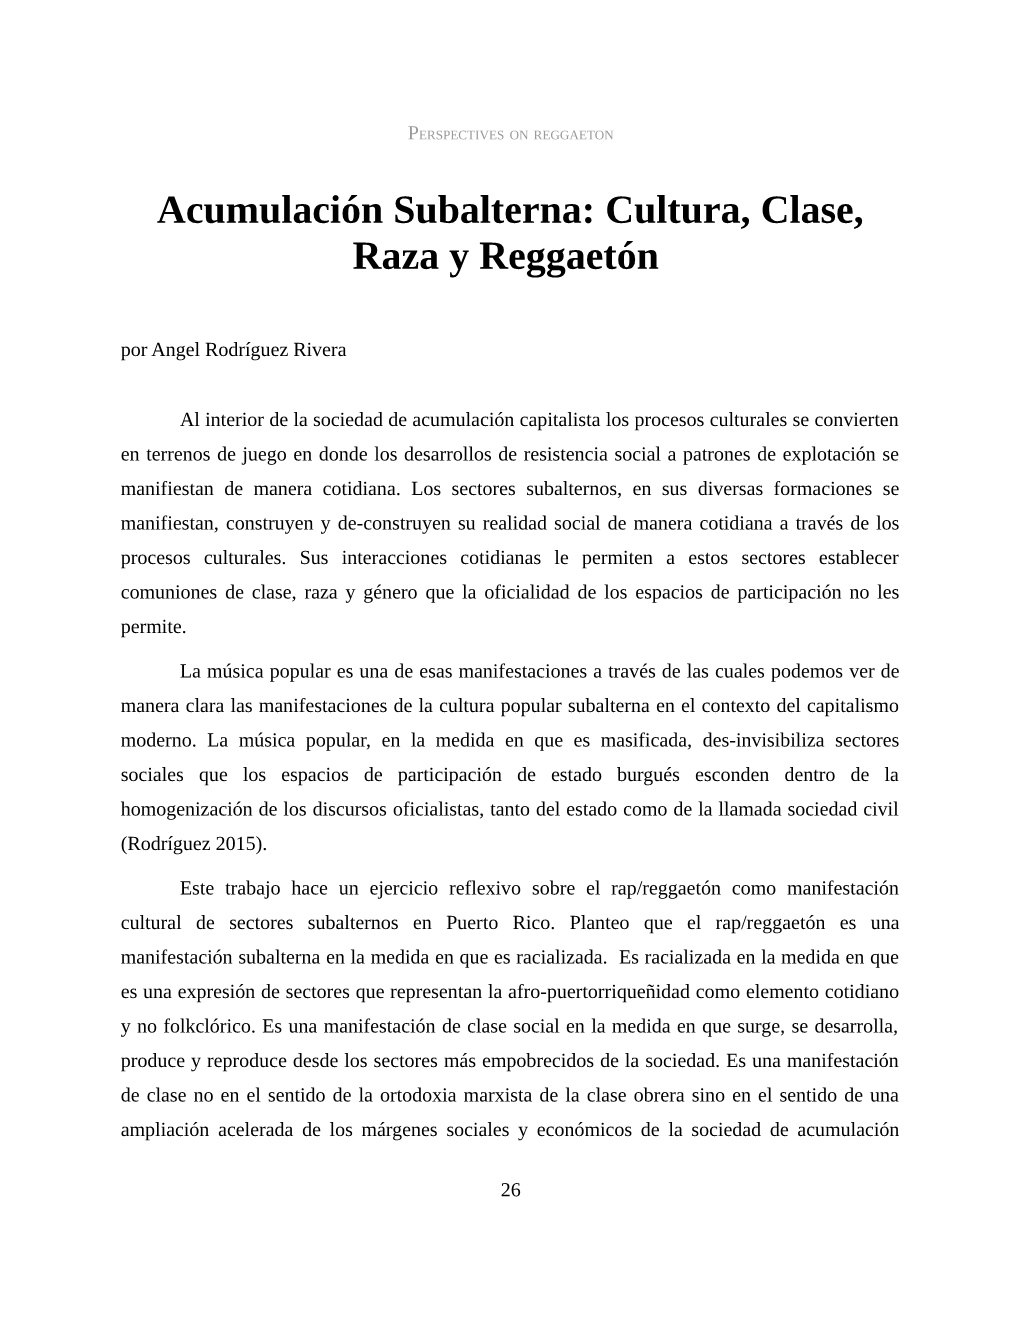 Acumulación Subalterna: Cultura, Clase, Raza Y Reggaetón